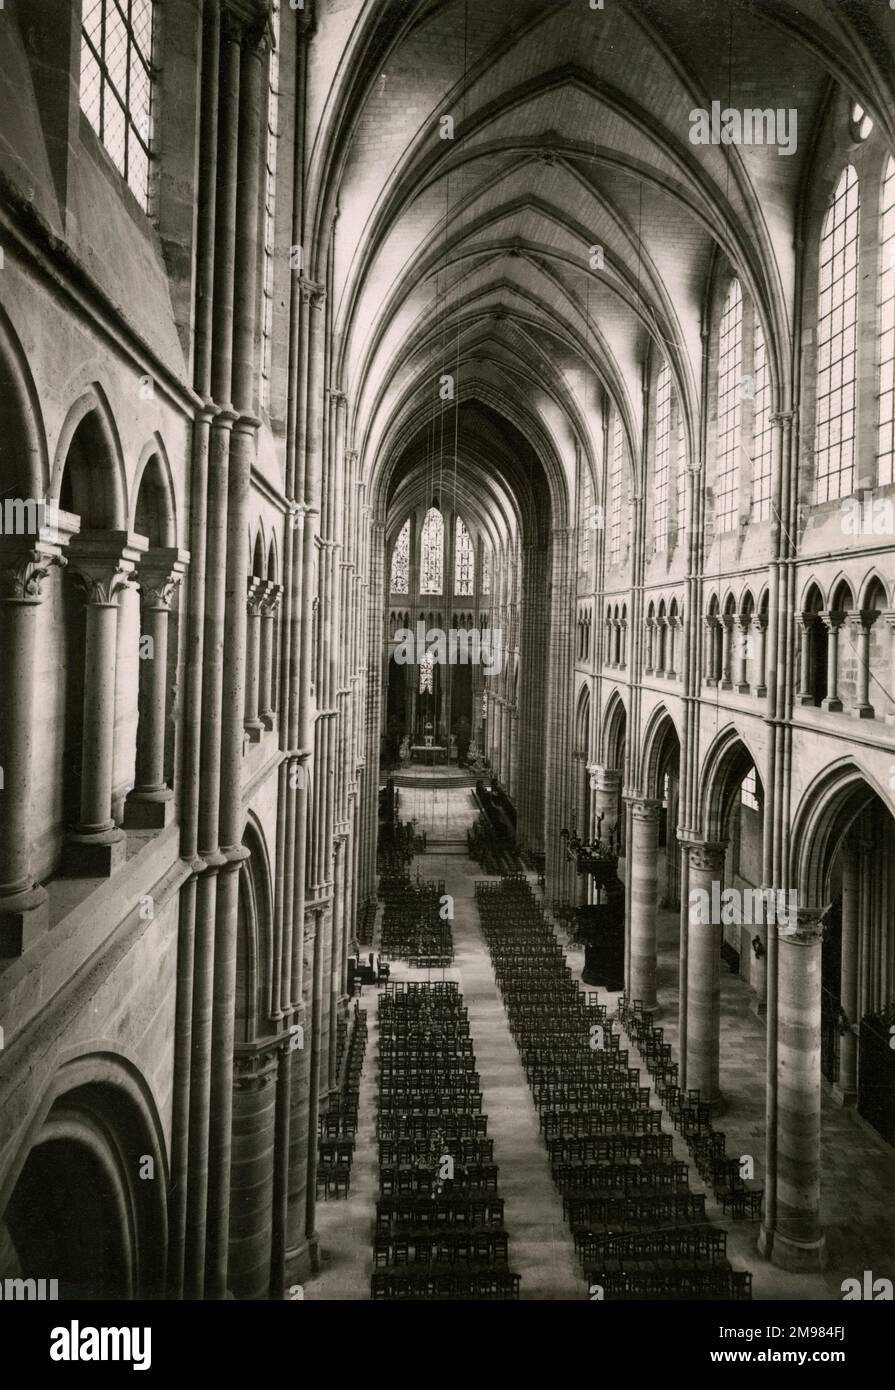 Soissons, Aisne - die Kathedrale St. Gervais und St. Protais (Cathédrale Saint-Gervais-et-Saint-Protais) ist ein Beispiel für gotische Architektur. Das Hauptschiff aus dem 13. Jahrhundert und die hohen Decken werden aus einem hohen Winkel gezeigt - das Bild wurde von der Orgelplattform aufgenommen. Stockfoto